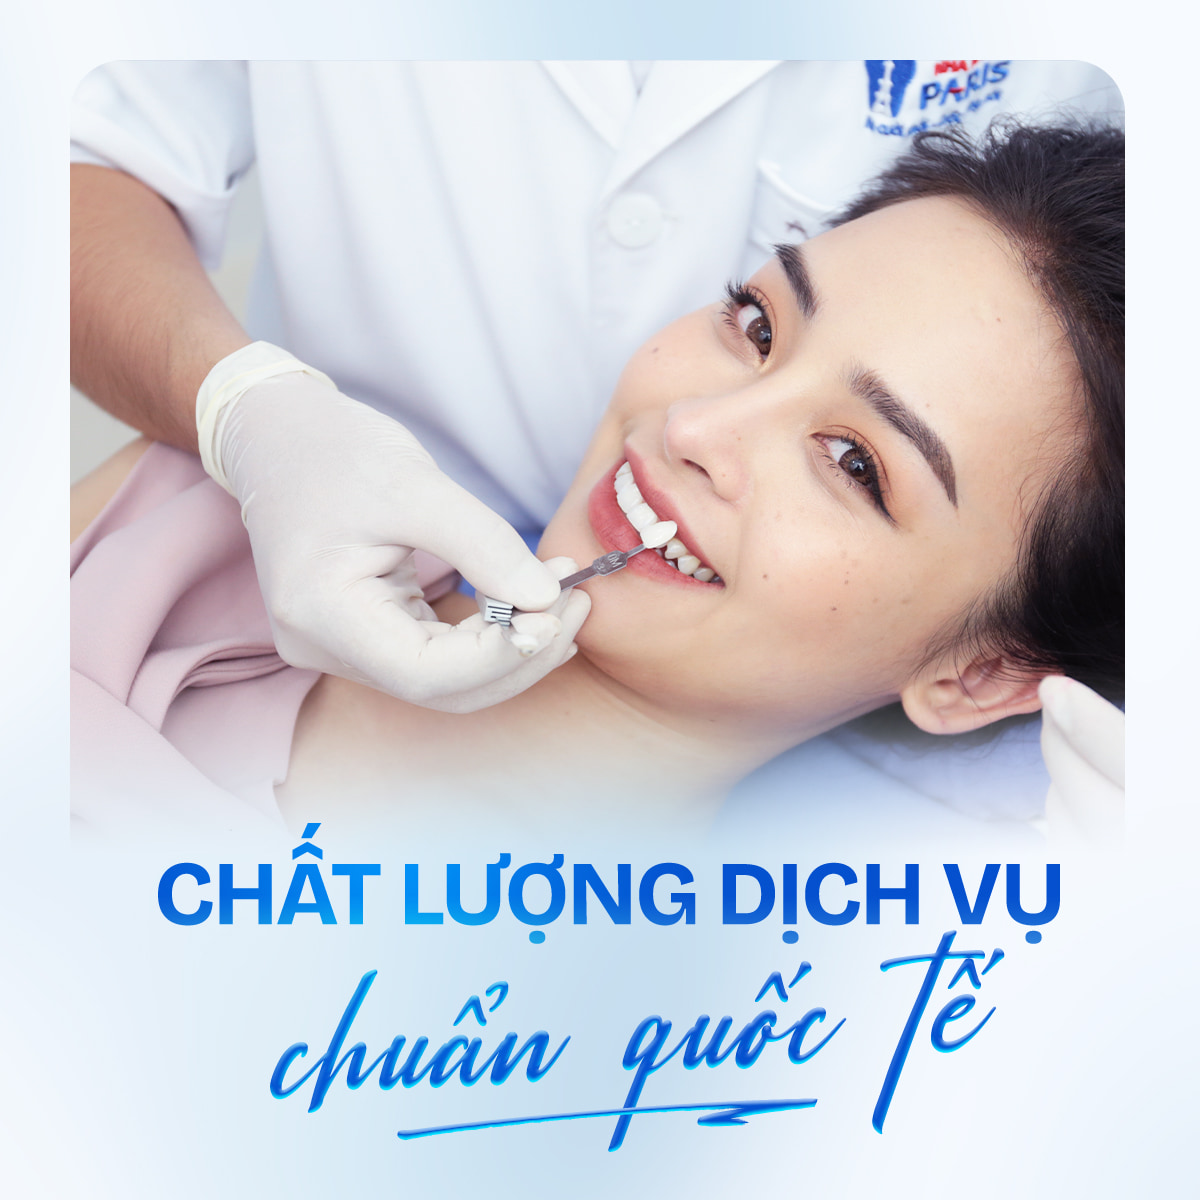 Chất lượng dịch vụ làm răng tại Việt Nam đạt chuẩn quốc tế